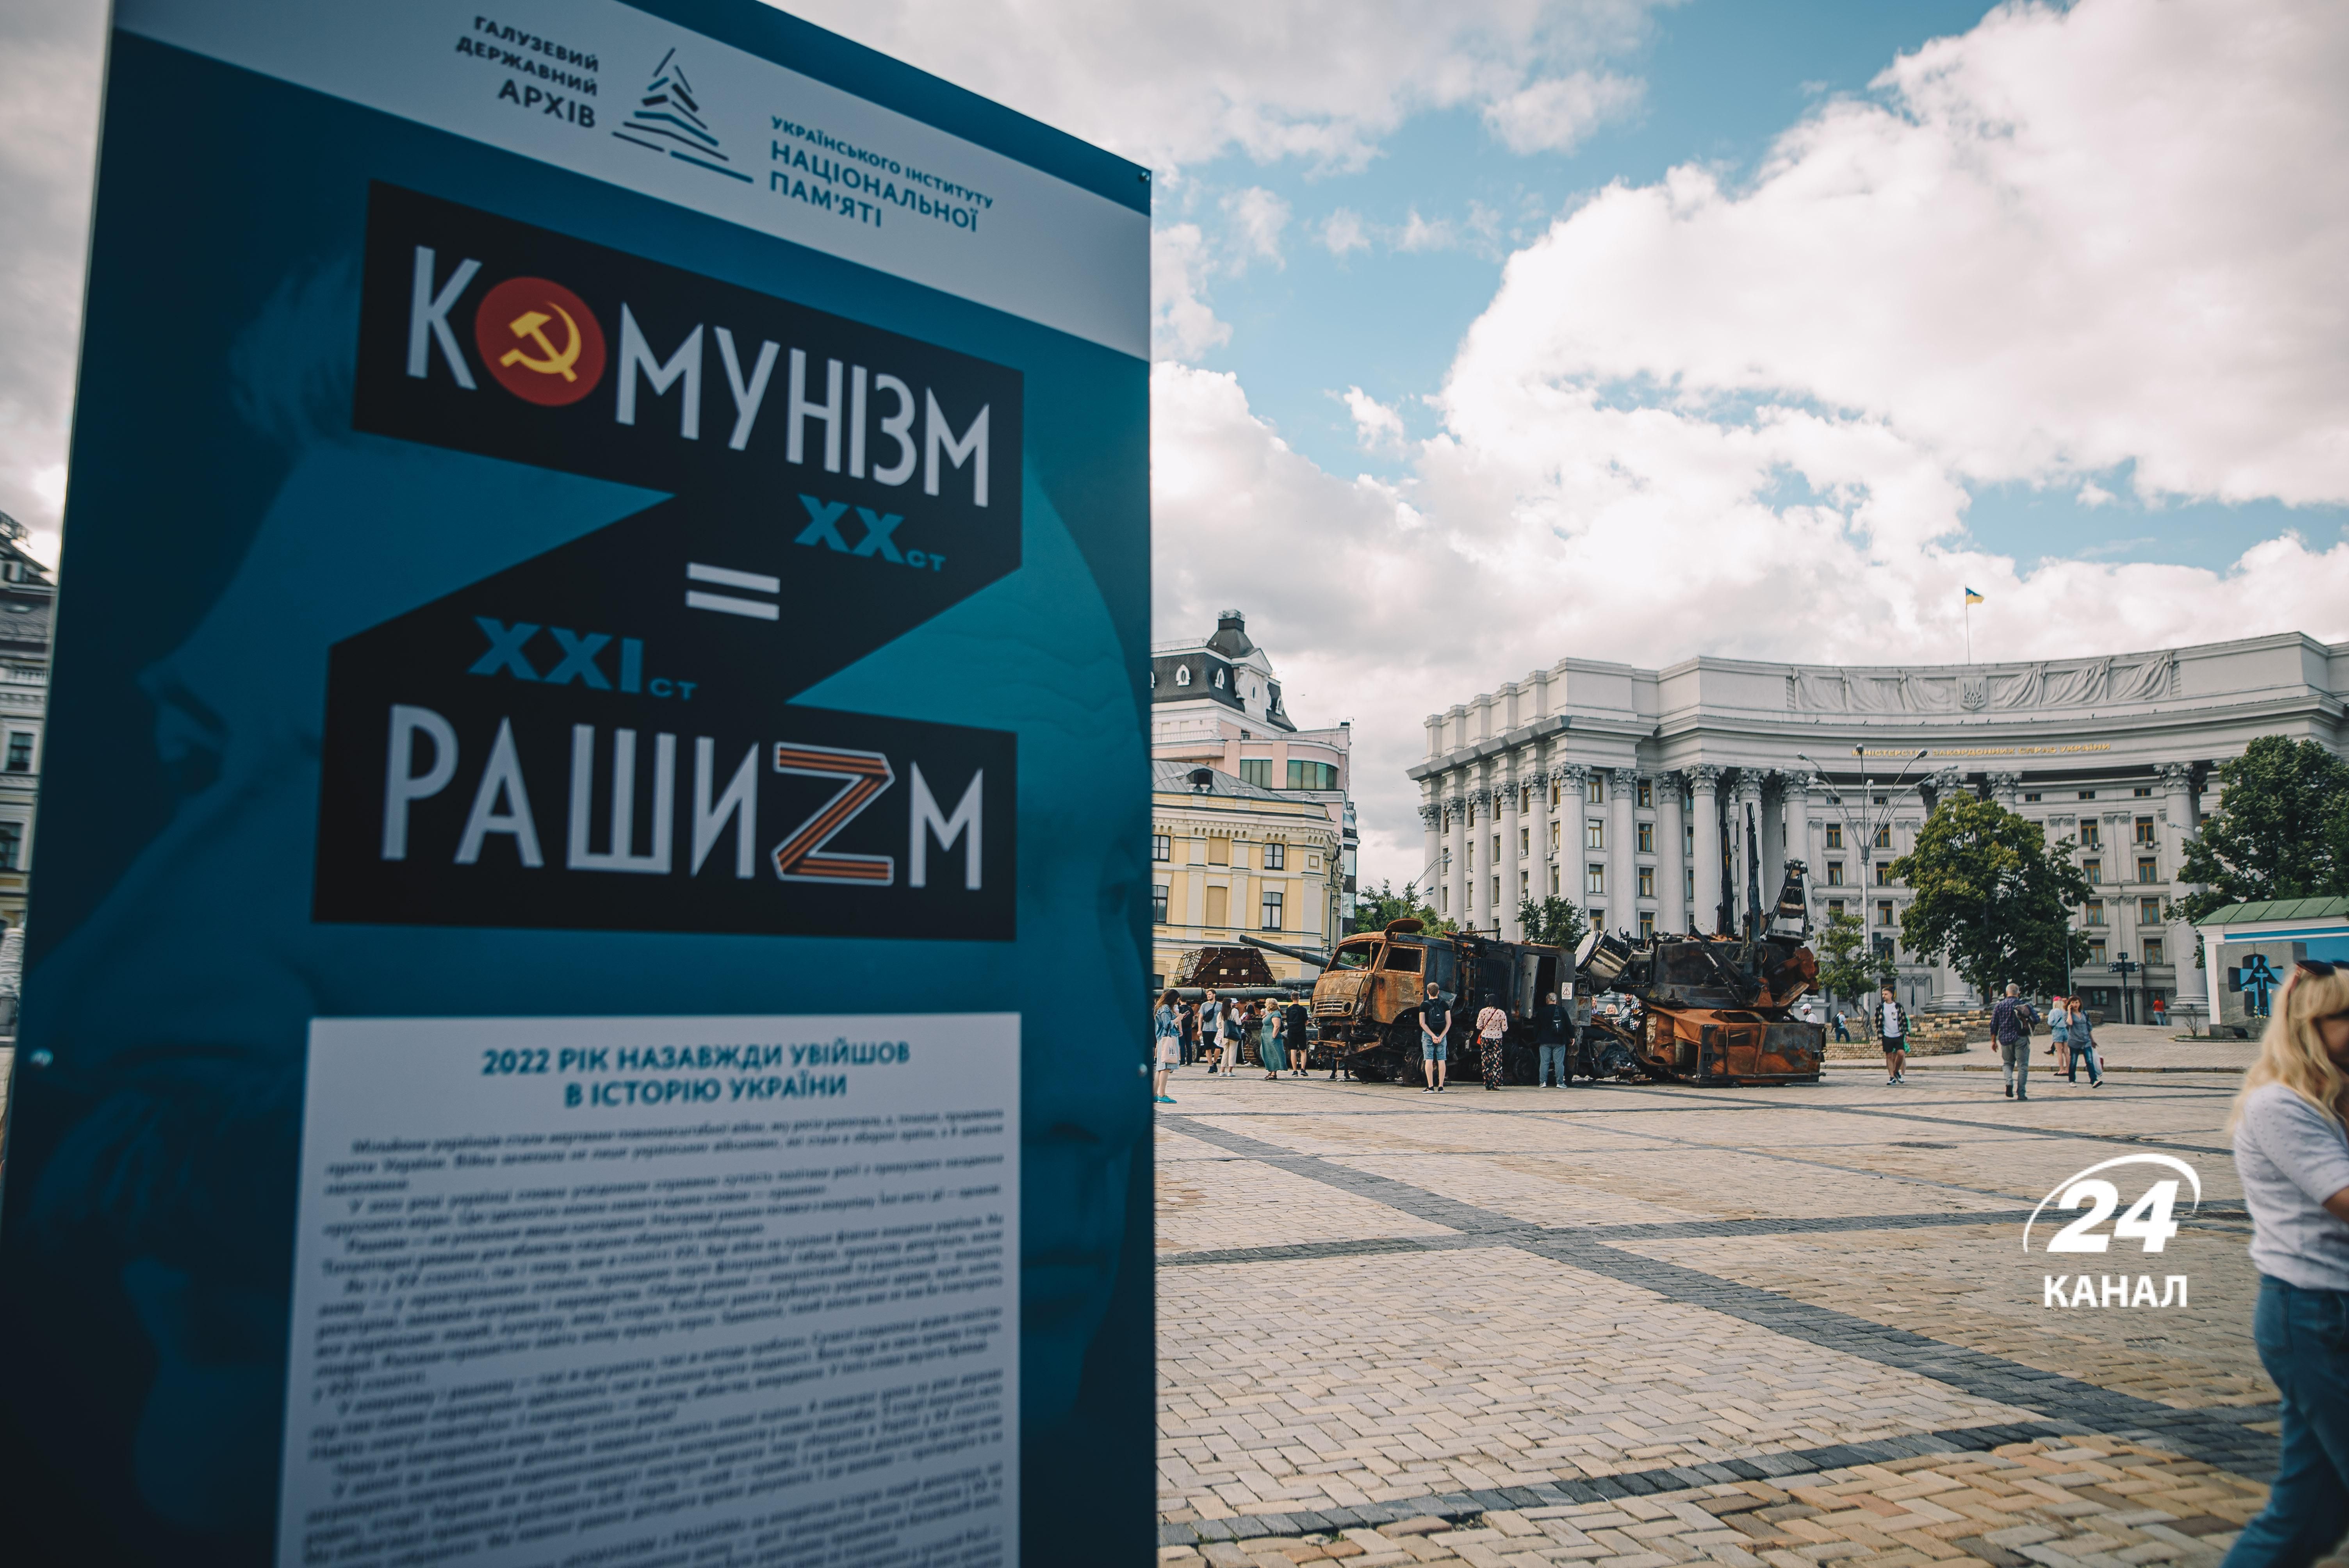 У Києві відкрили вуличну виставку "Комунізм=Рашизм": фоторепортаж 24 каналу з місця події